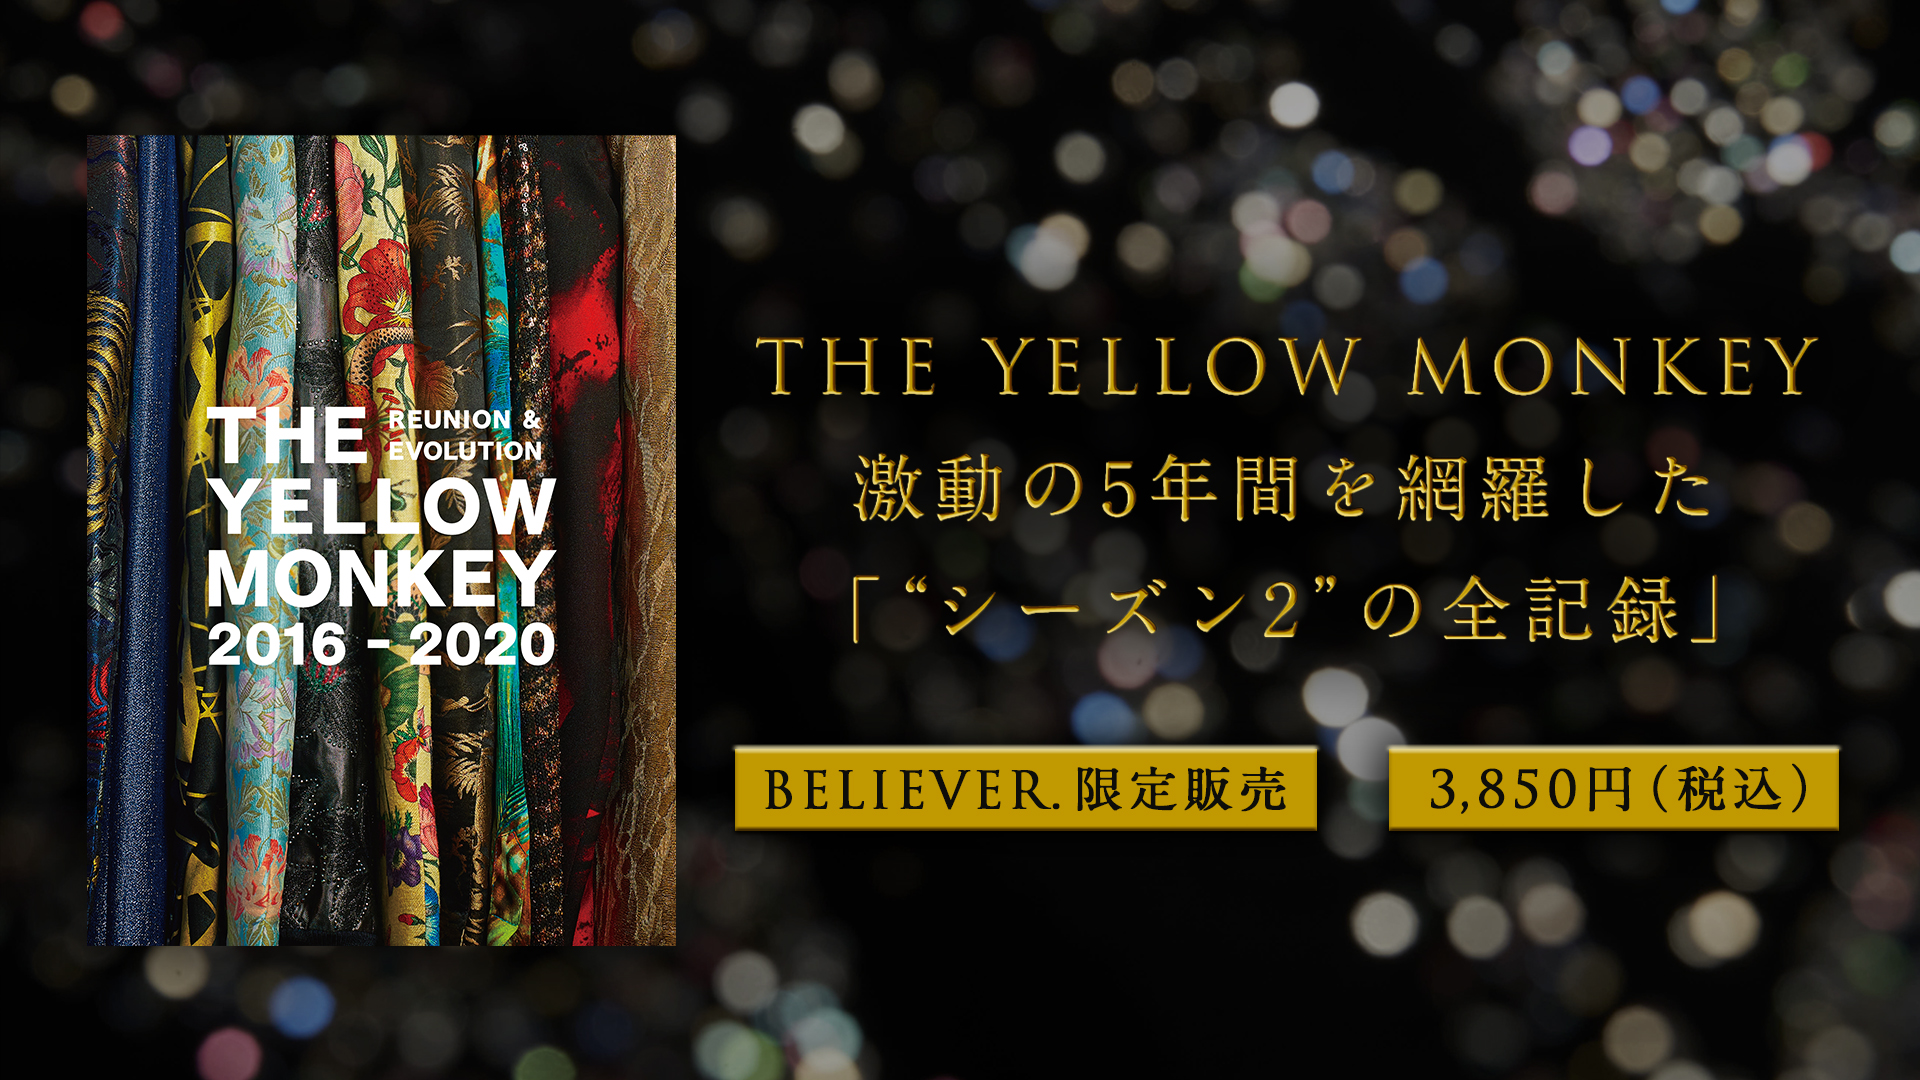 再集結後の活動を網羅した豪華記念本「THE YELLOW MONKEY 2016-2020 REUNION & EVOLUTION」発売中！